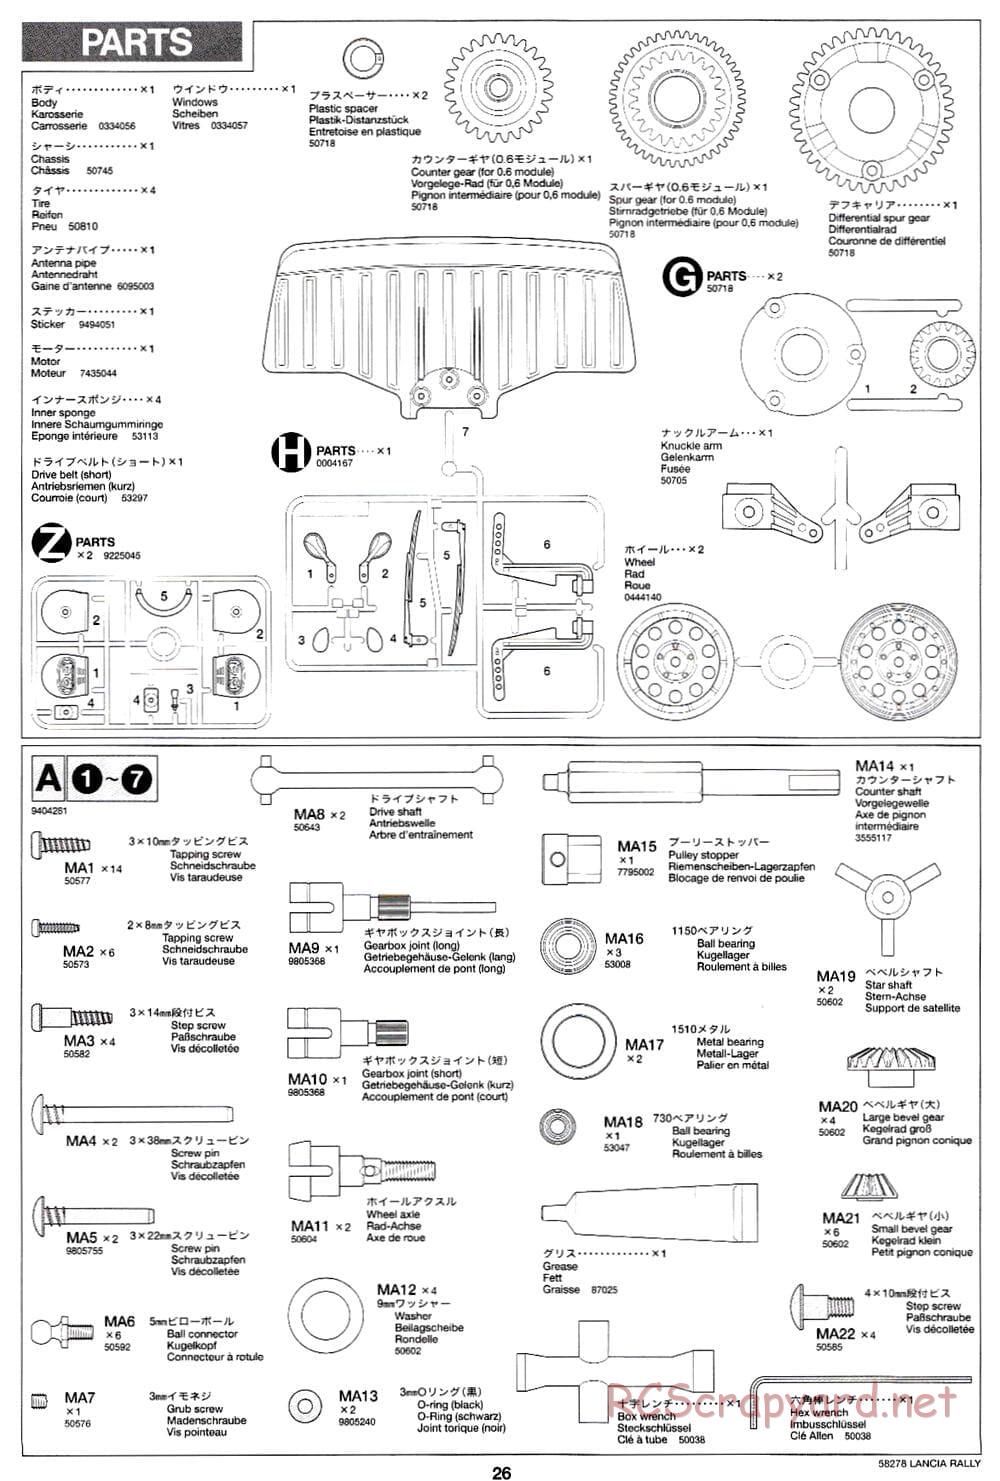 Tamiya - Lancia 037 Rally - TA-03RS Chassis - Manual - Page 26